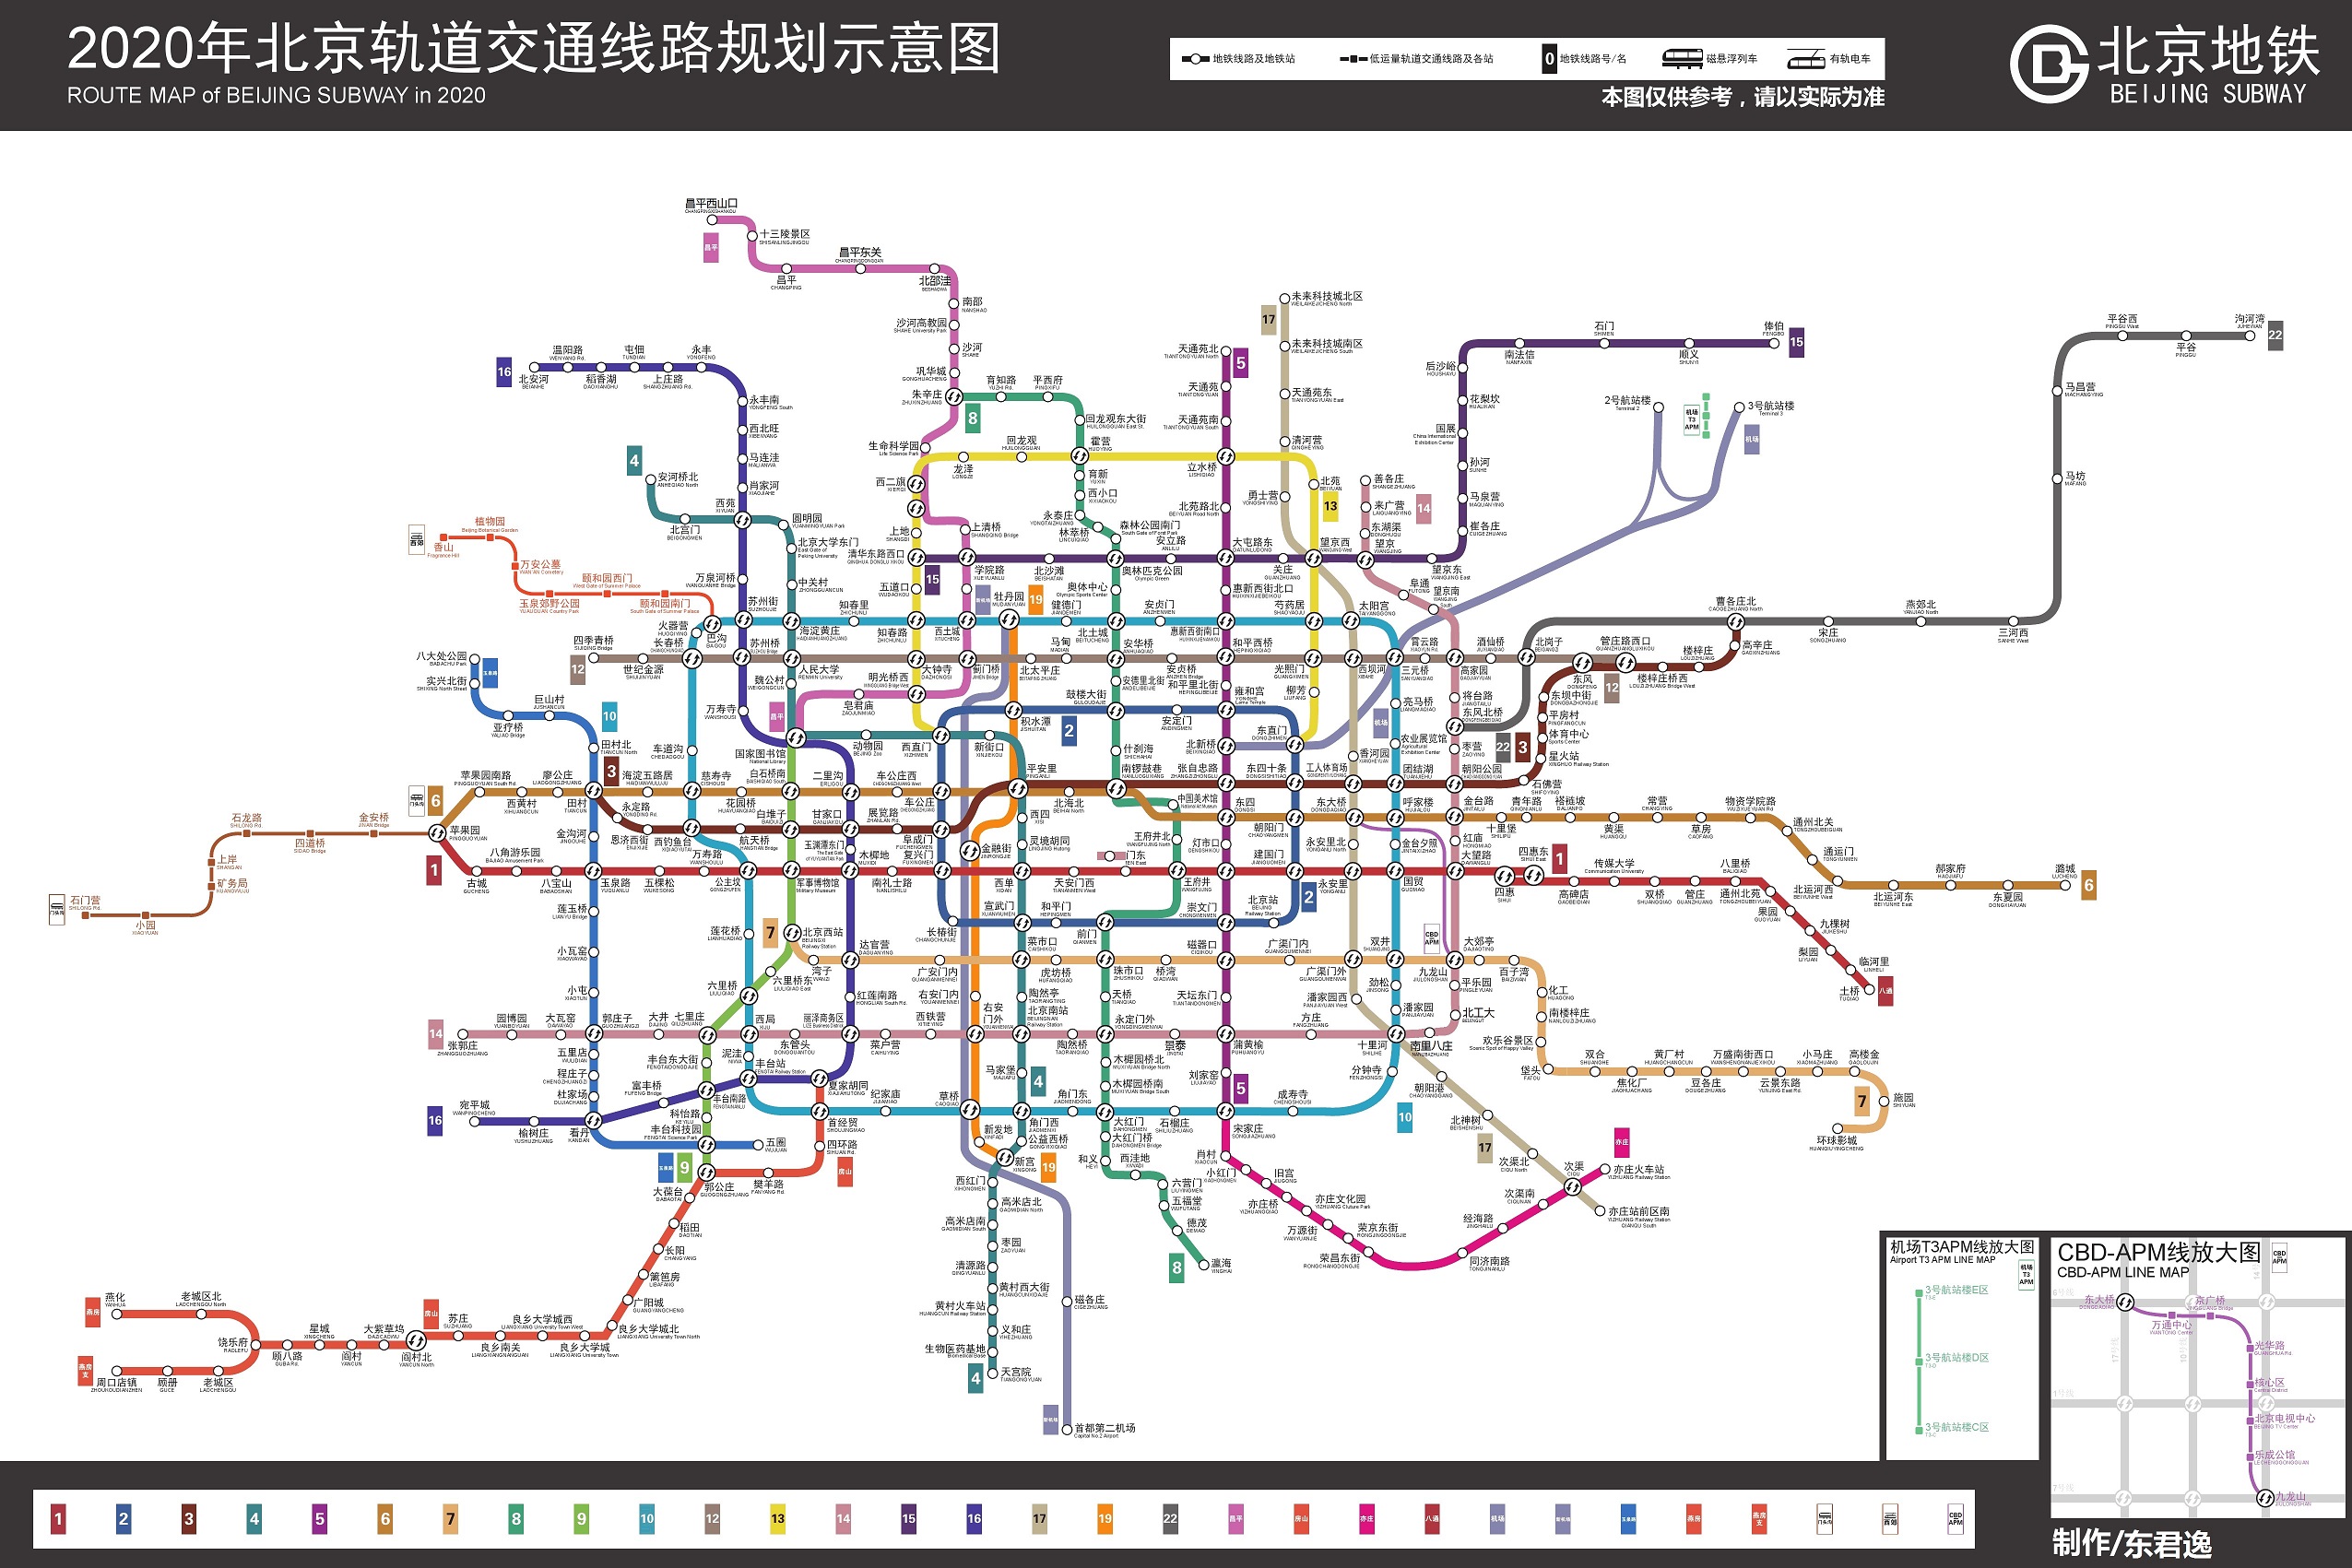 的地铁网络,2020年超过1000公里; 北京有二环,三环,四环,五环,六环